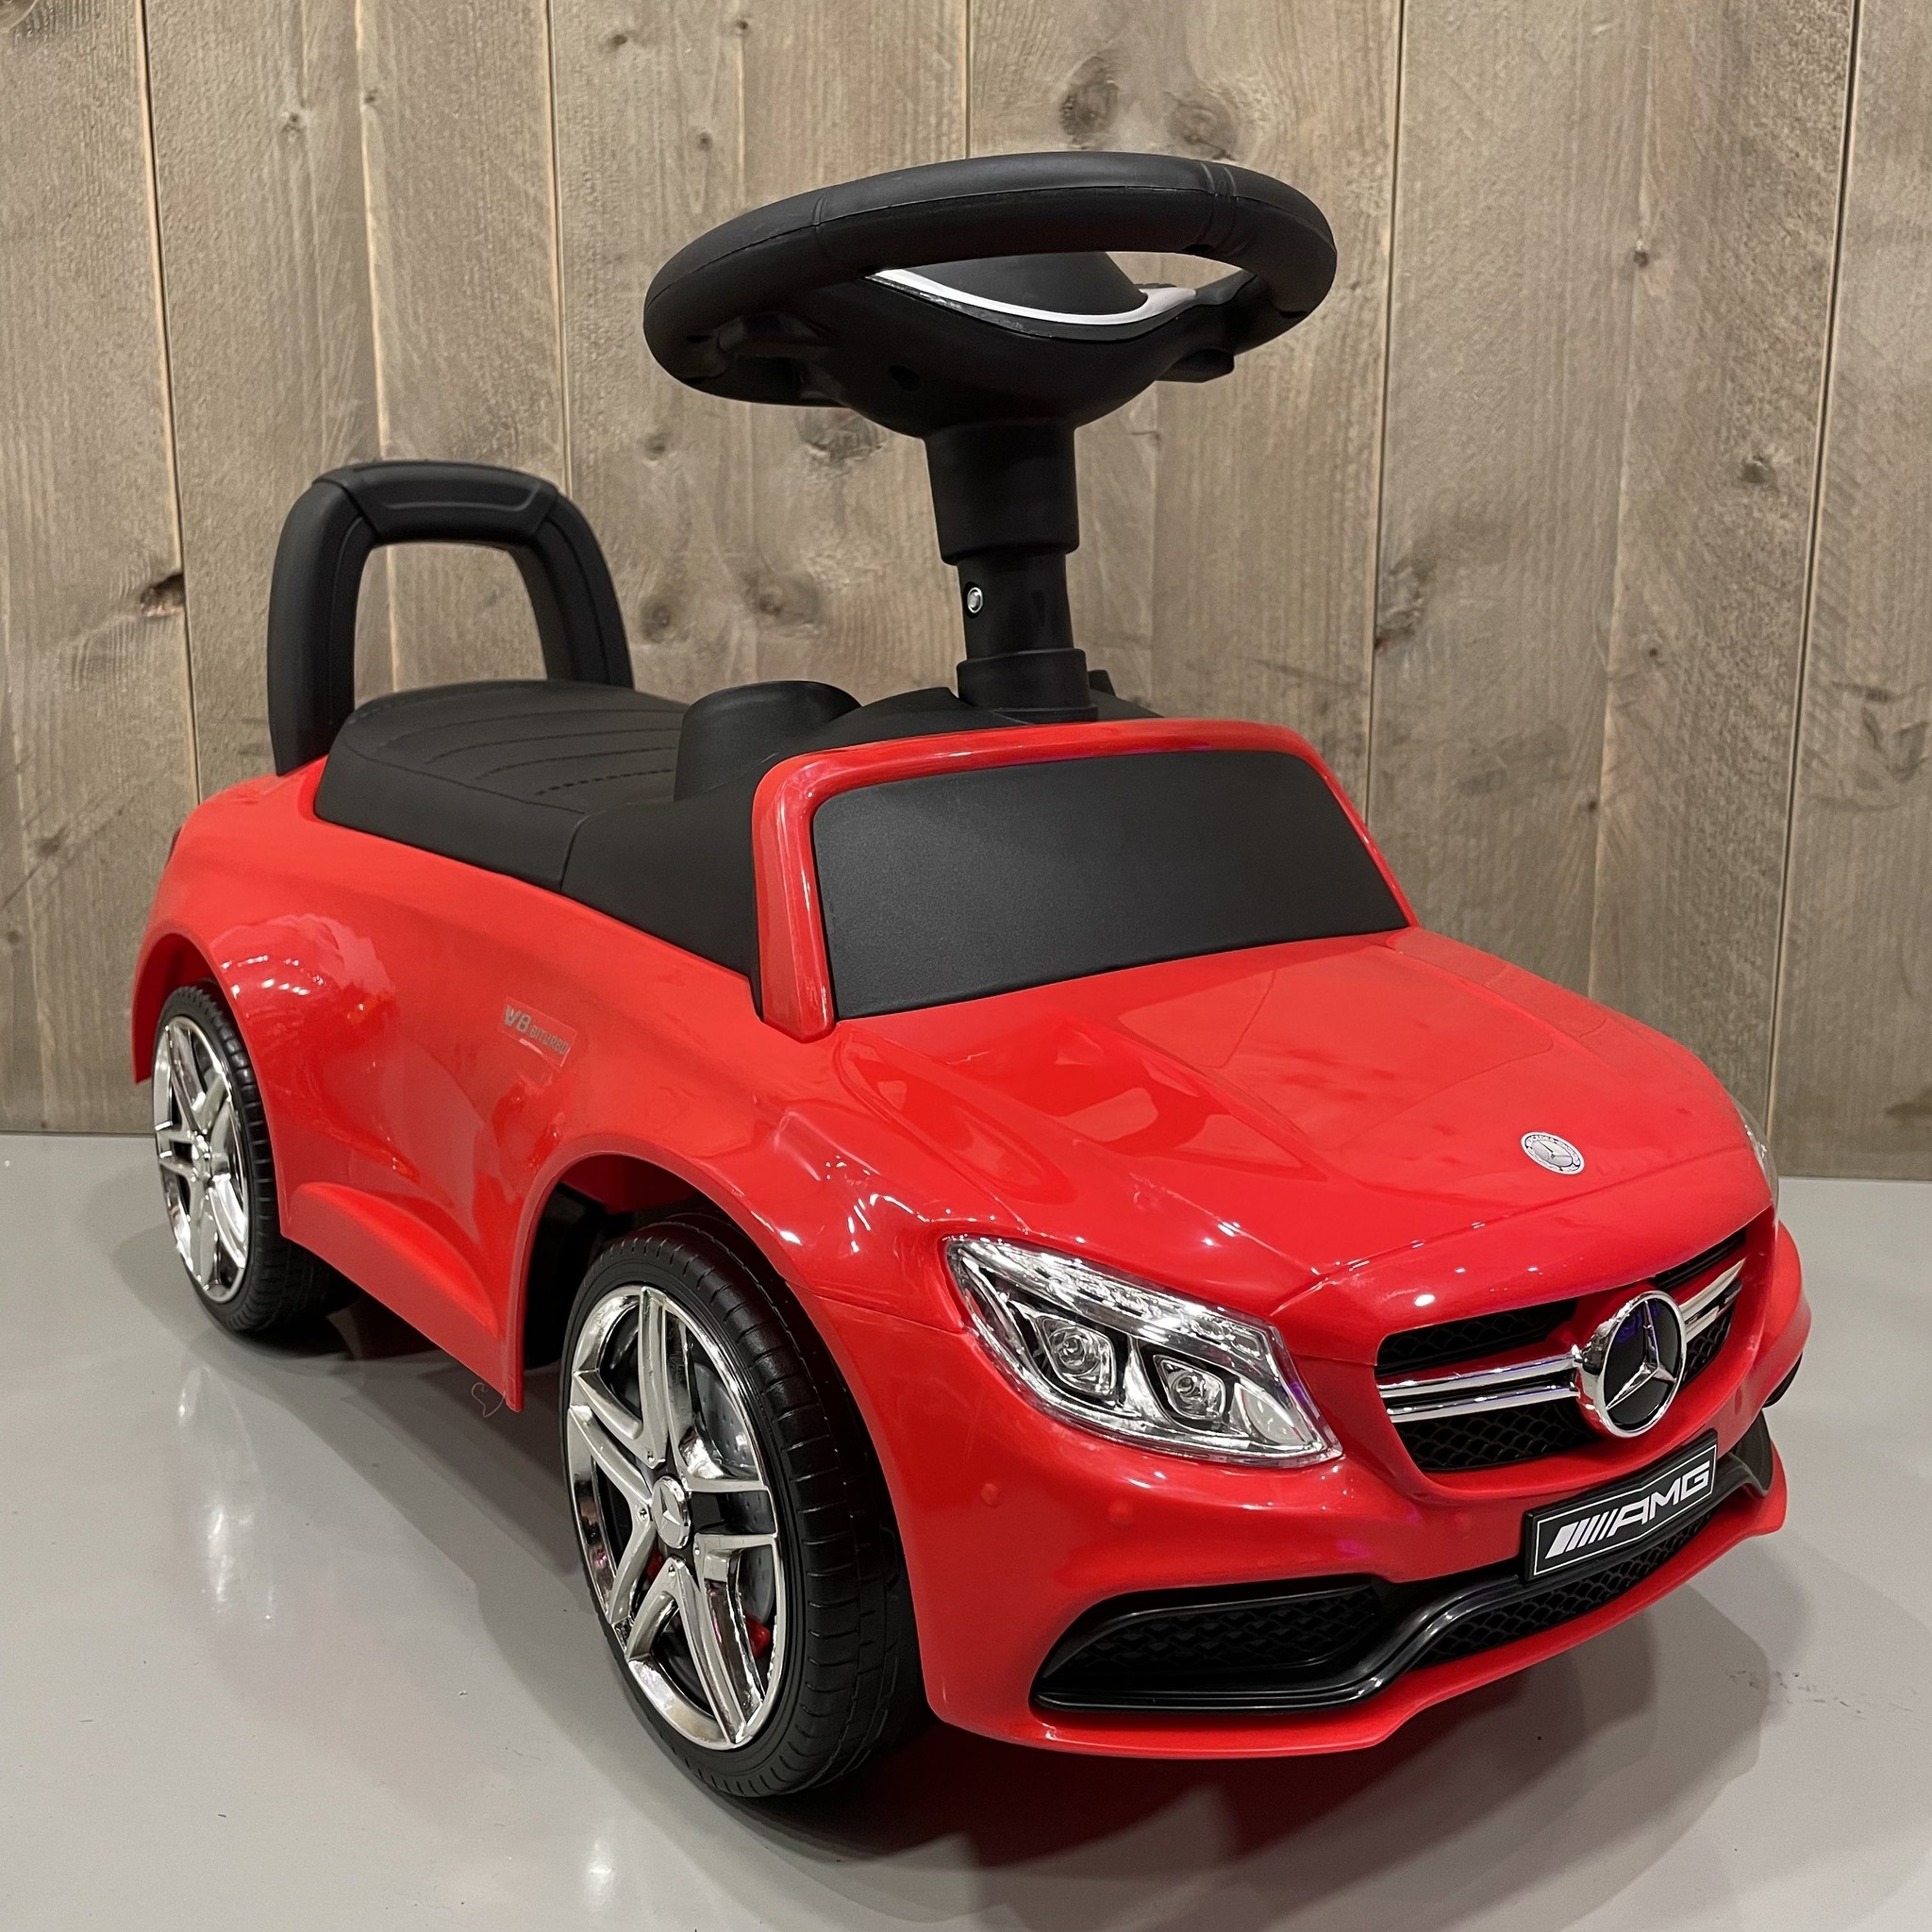 Dageraad Gastvrijheid Mark Mercedes C63 AMG Loopauto kopen? De Mooiste Loopauto Voor Kids! ✓ - CarKiddo